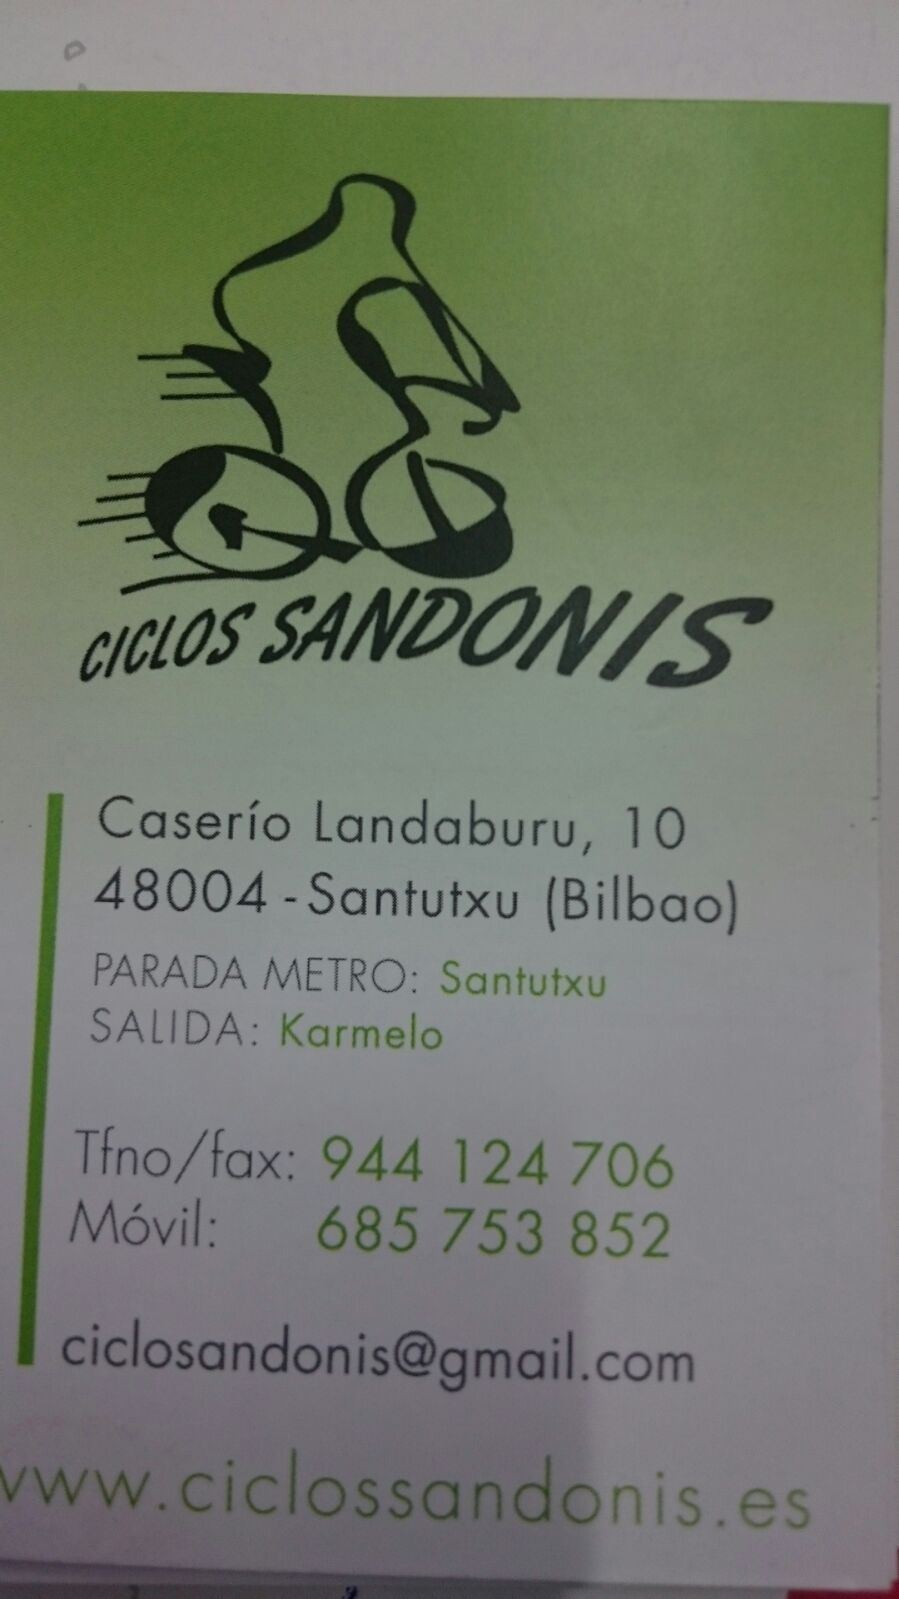 CICLOS SANDONIS